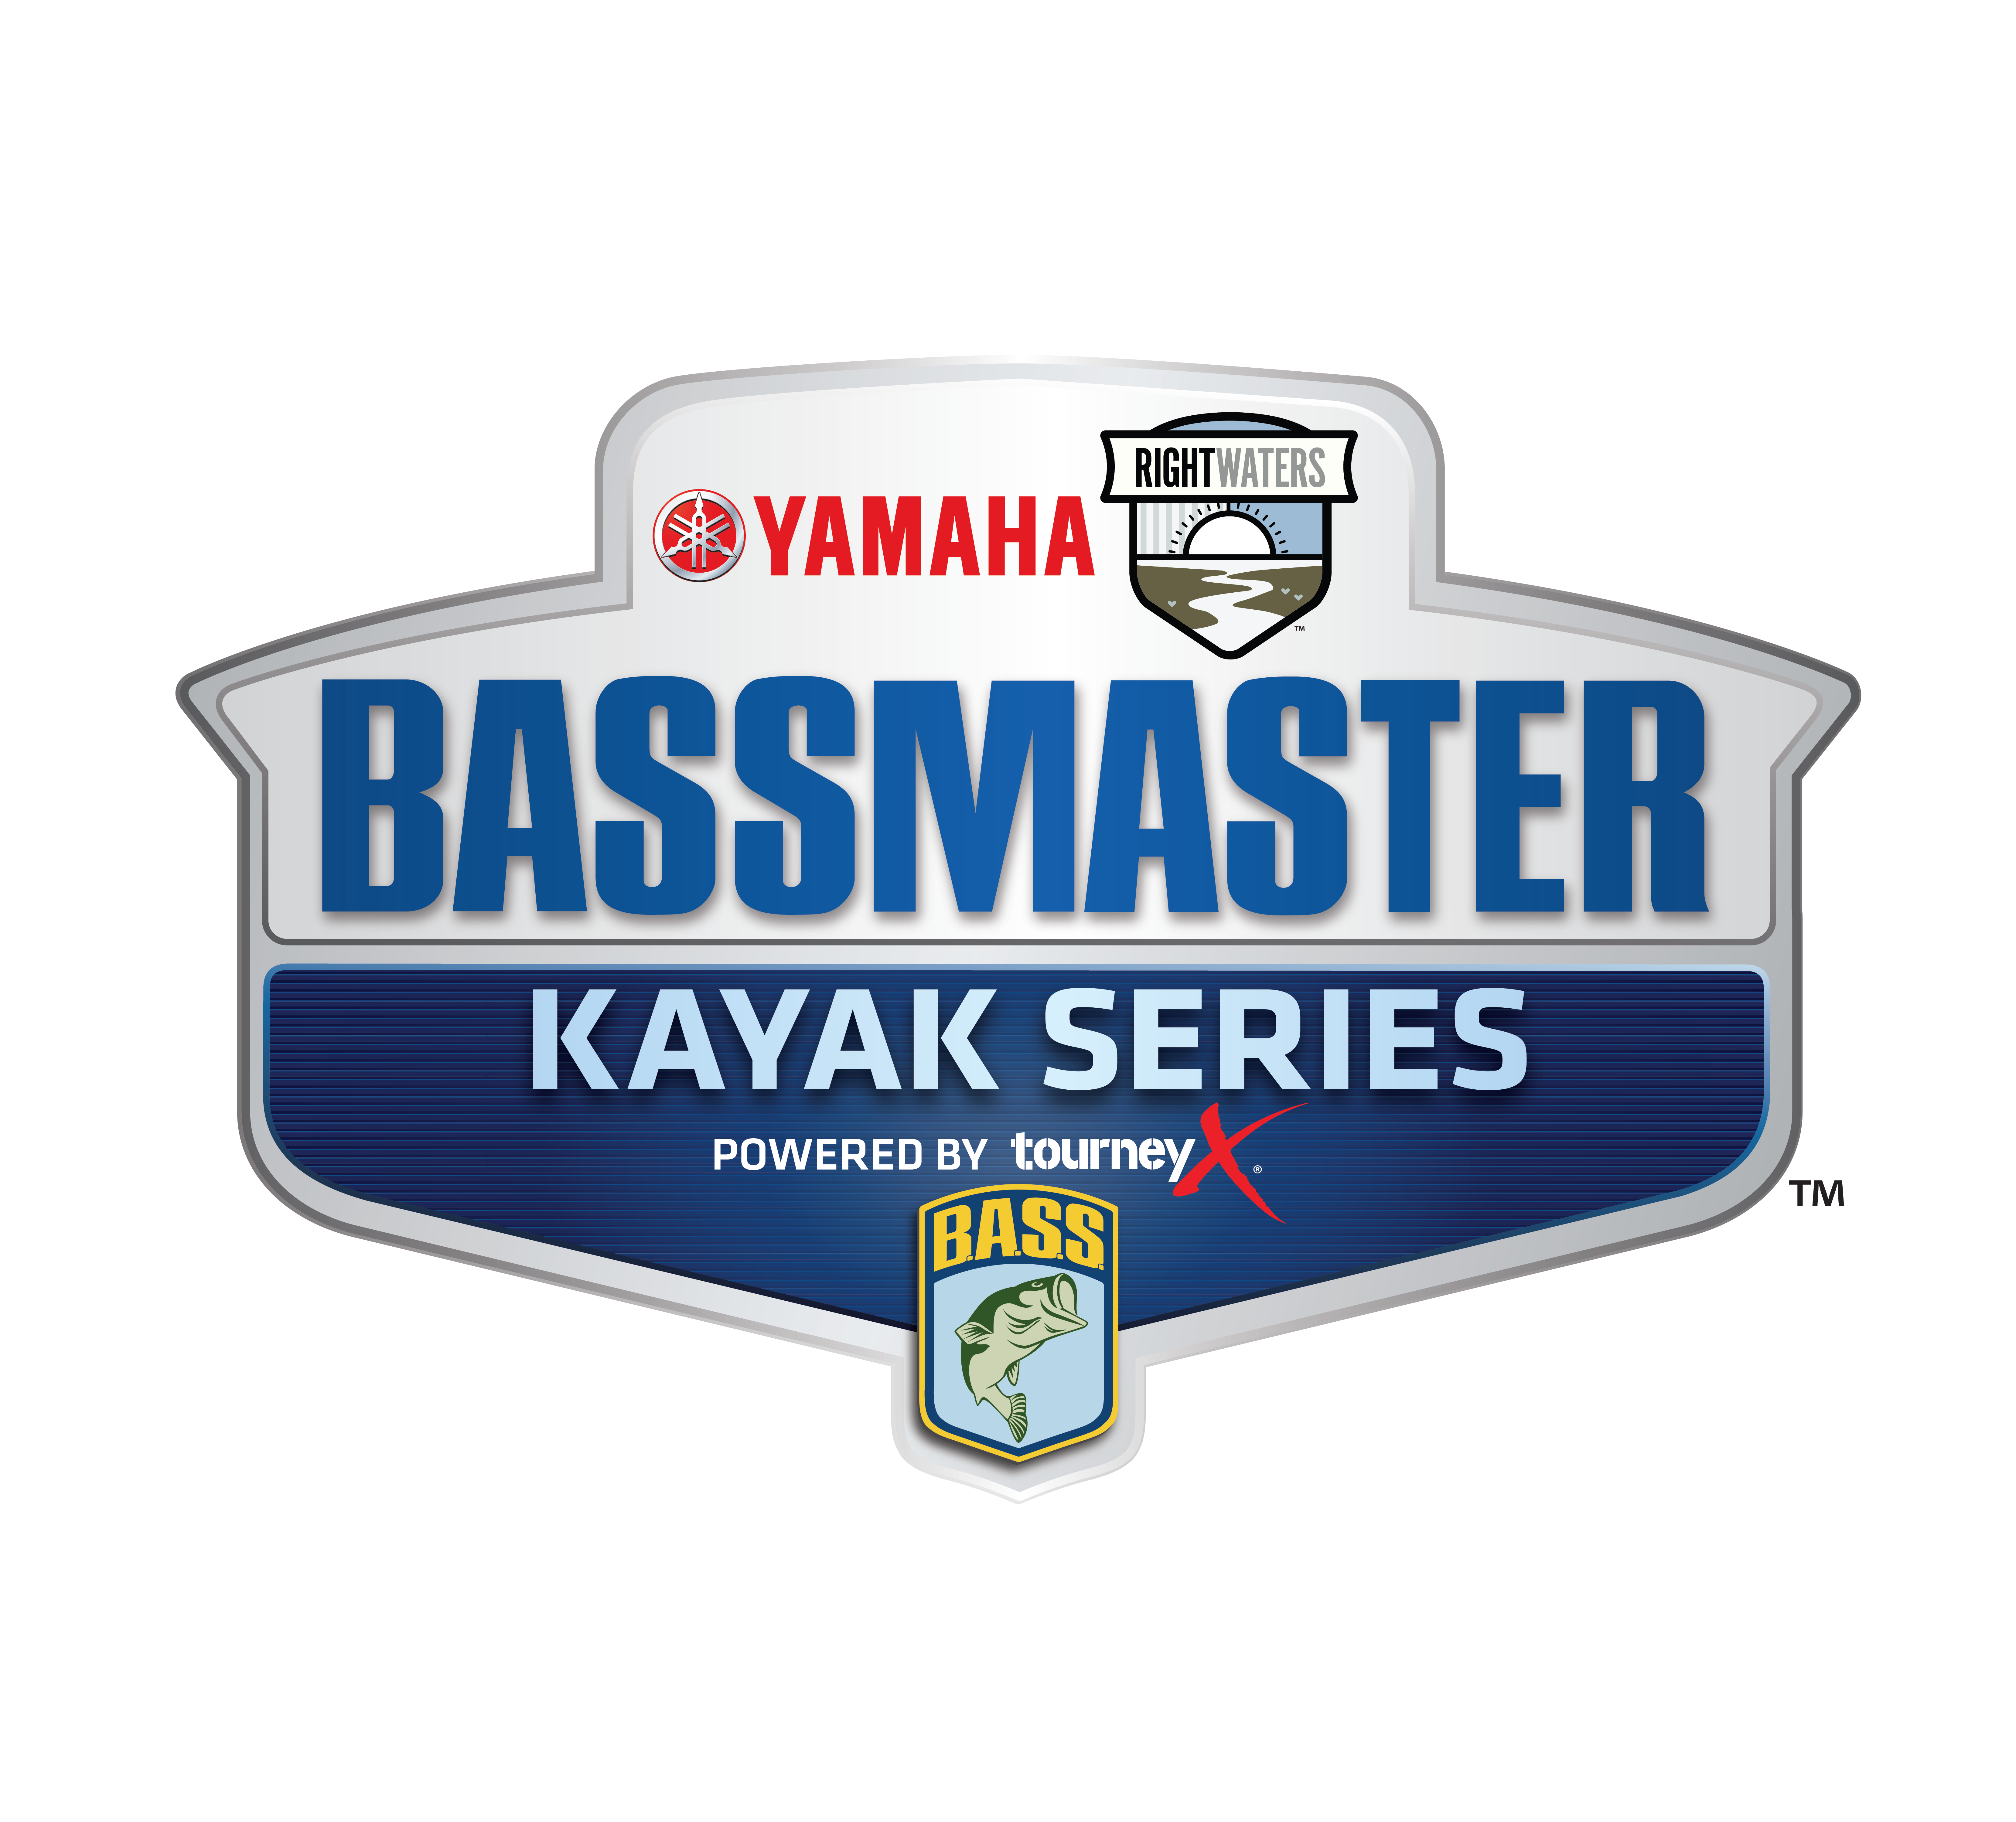 Bassmaster_Kayak_YamahaRW_4C.png